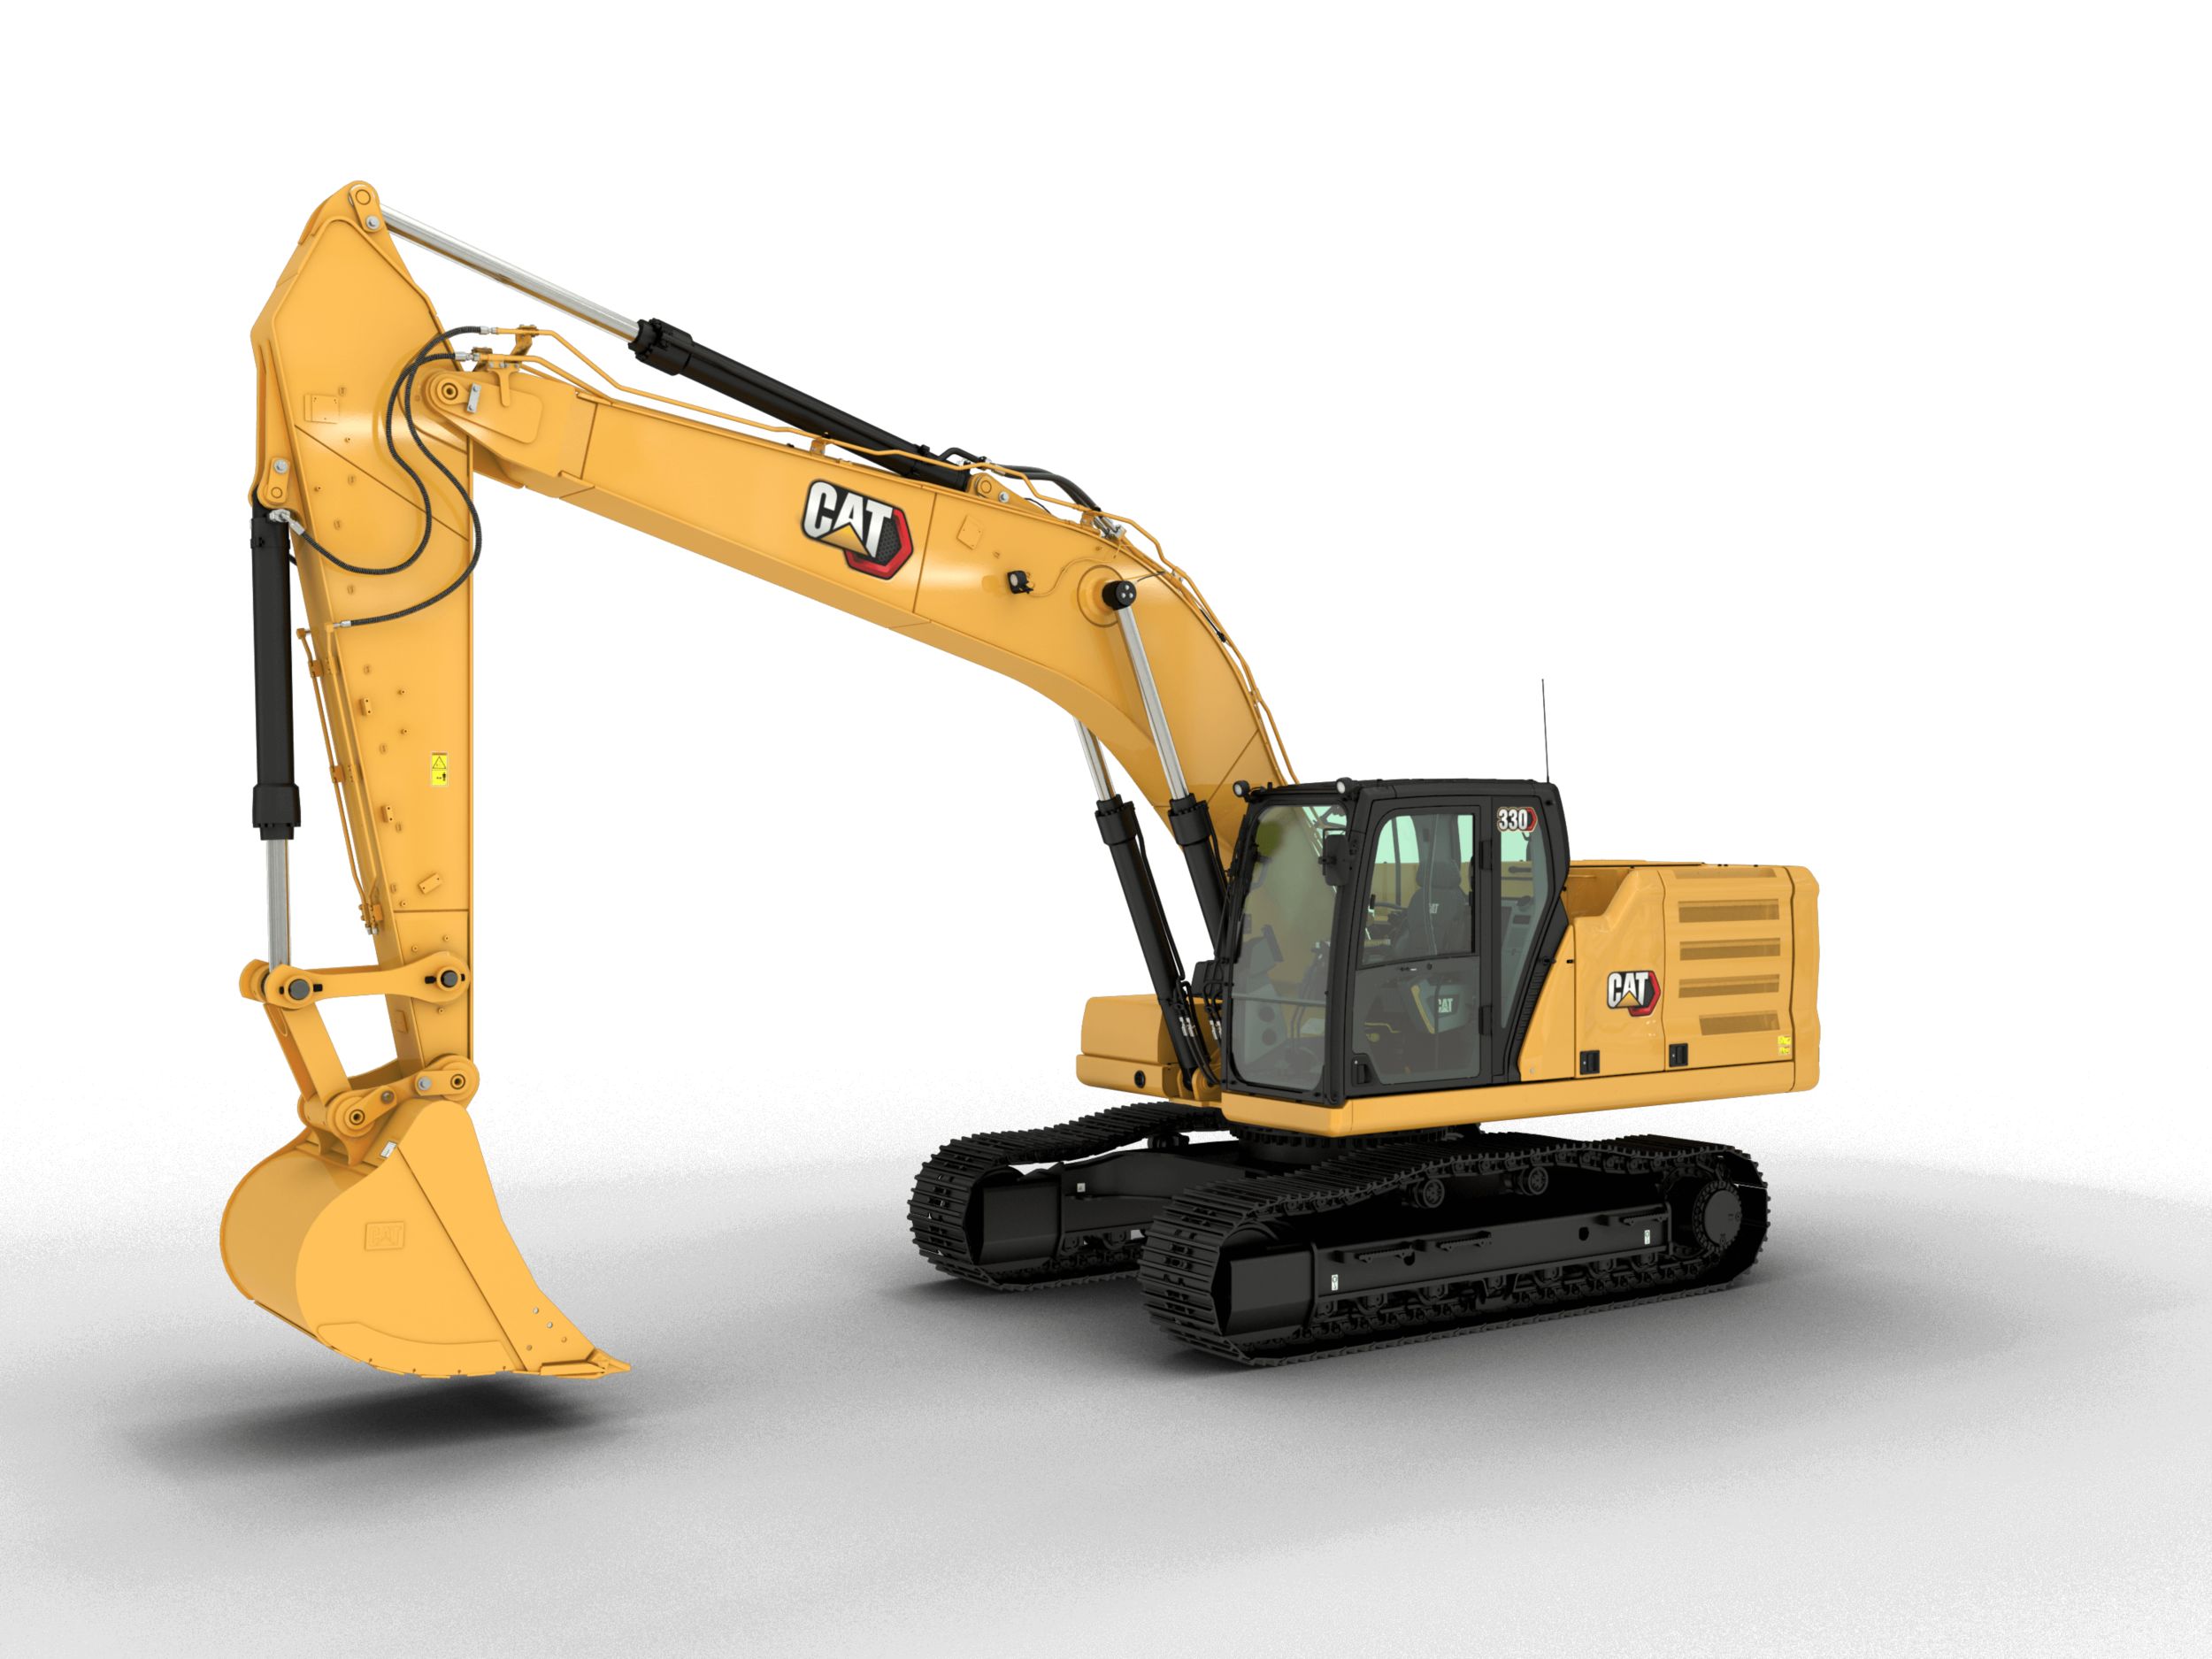 330 Hydraulic Excavator Cat Caterpillar